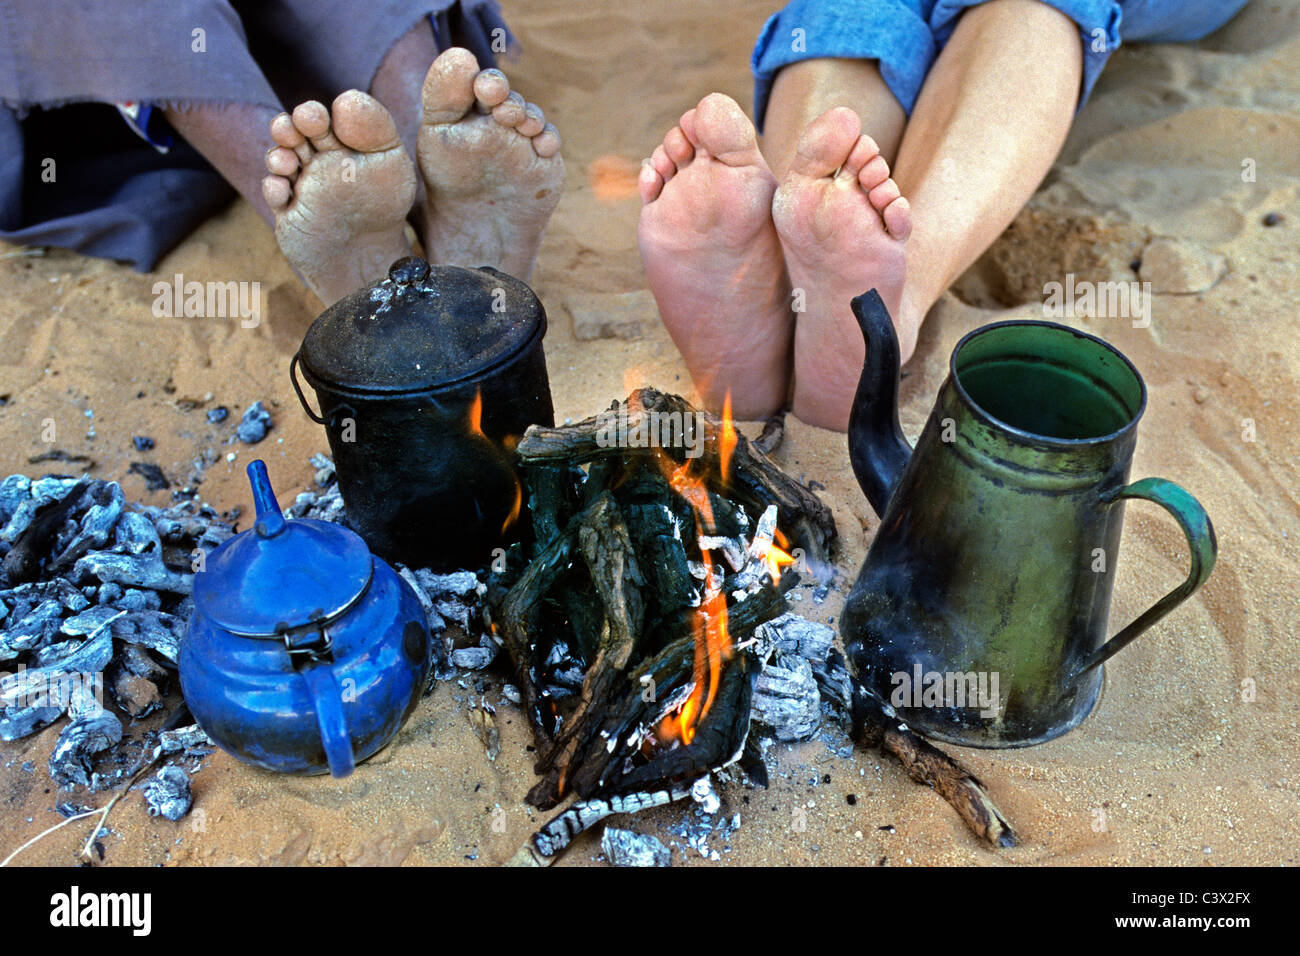 L'Algérie, Djanet, désert du Sahara, les pieds de l'homme de tribu Touareg et touristique. Théières. De Camp. Banque D'Images